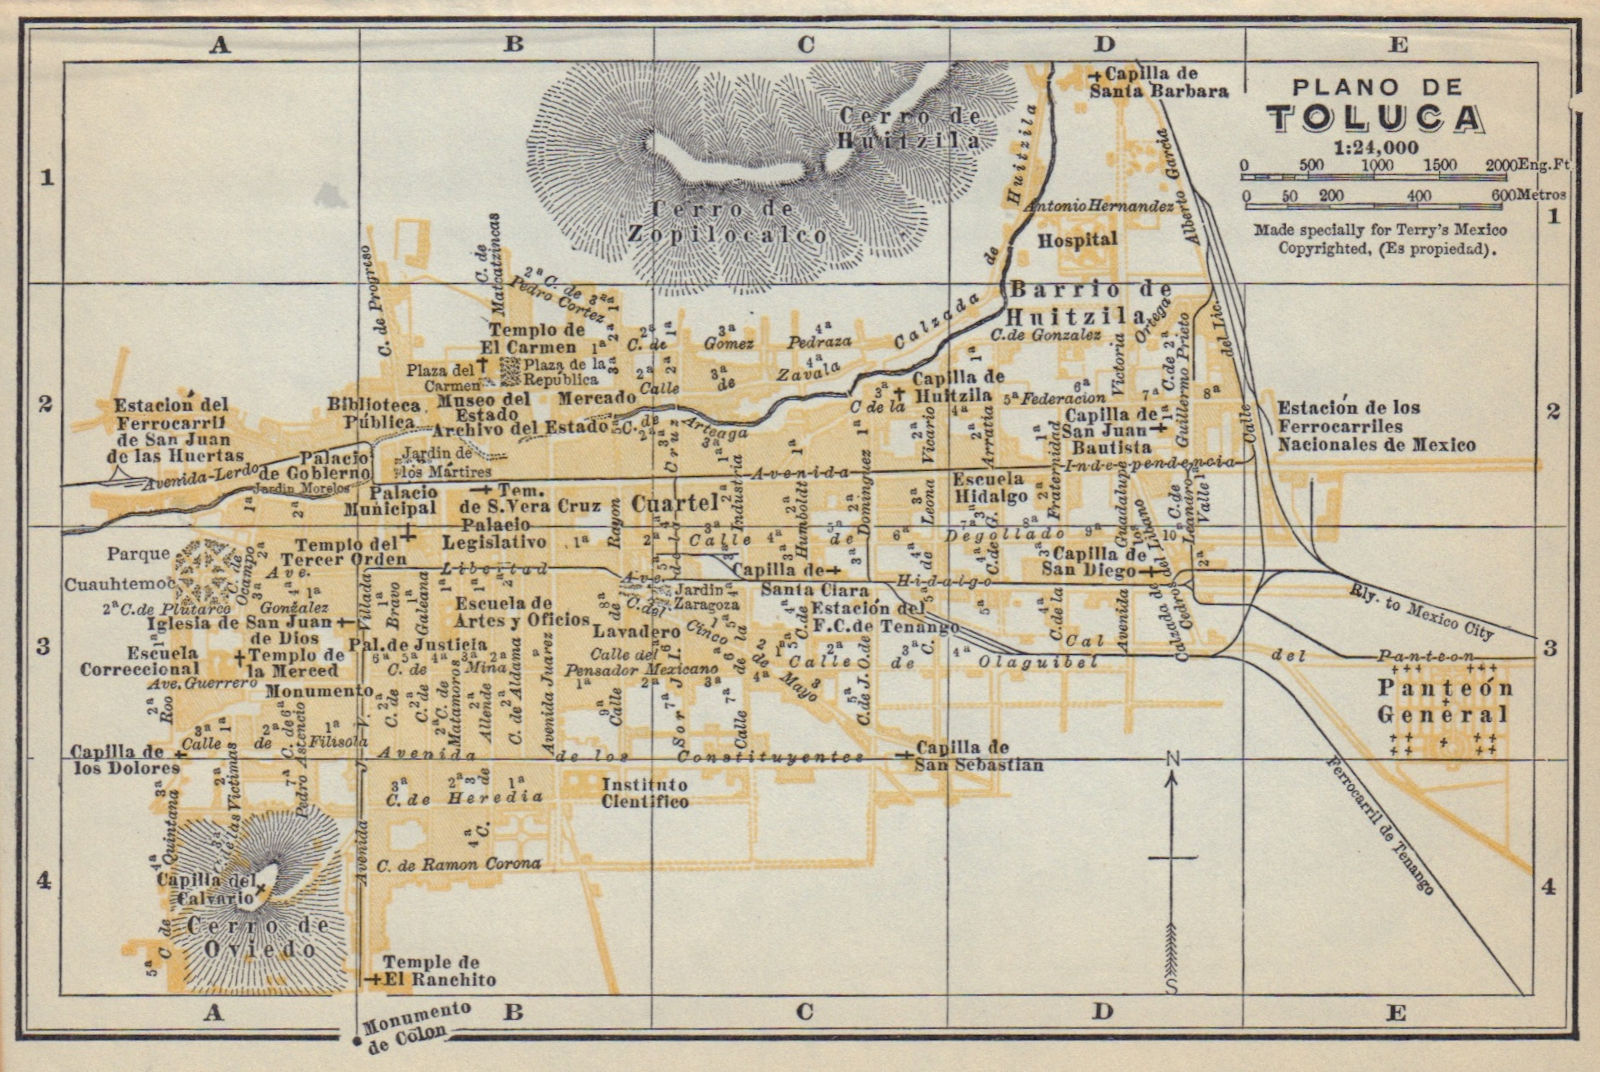 Plano de TOLUCA, Mexico. Mapa de la ciudad. City/town plan 1938 old